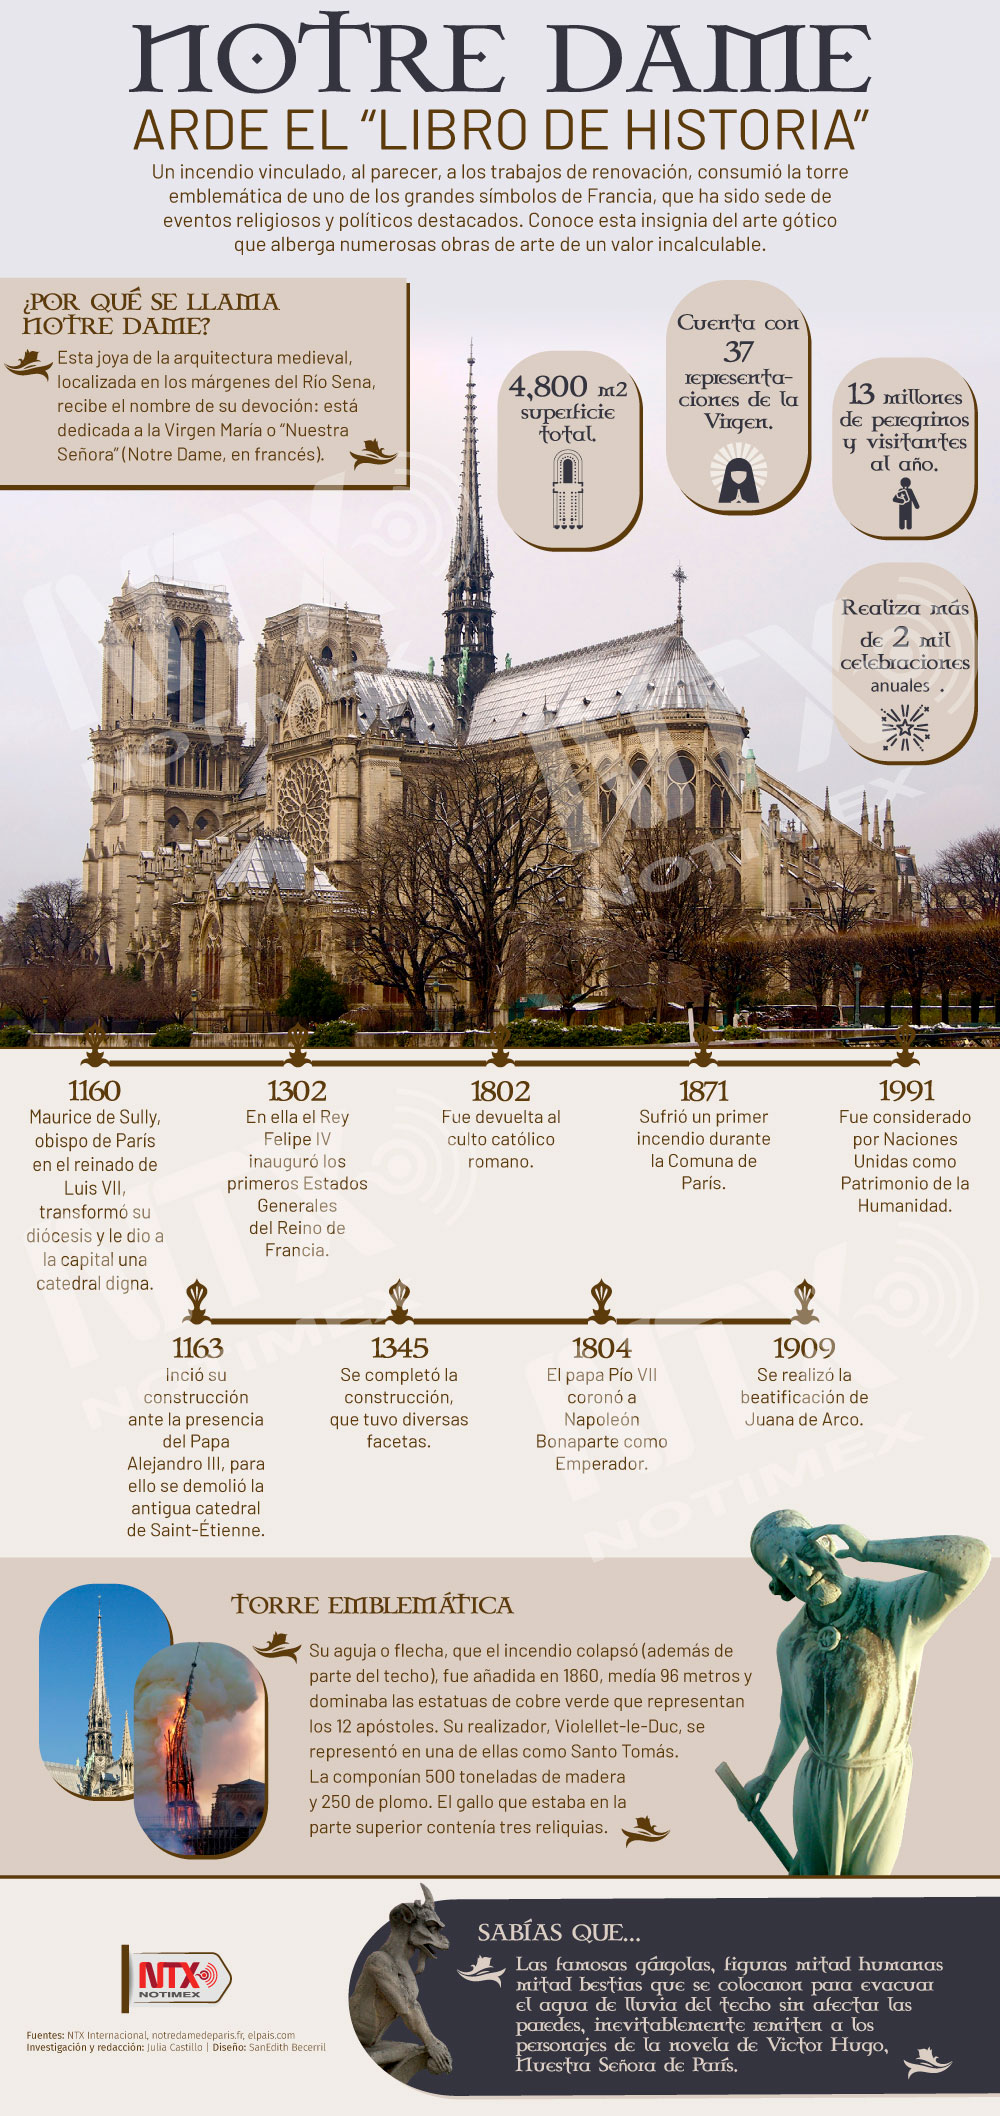  Notre Dame arde el "Libro de Historia"